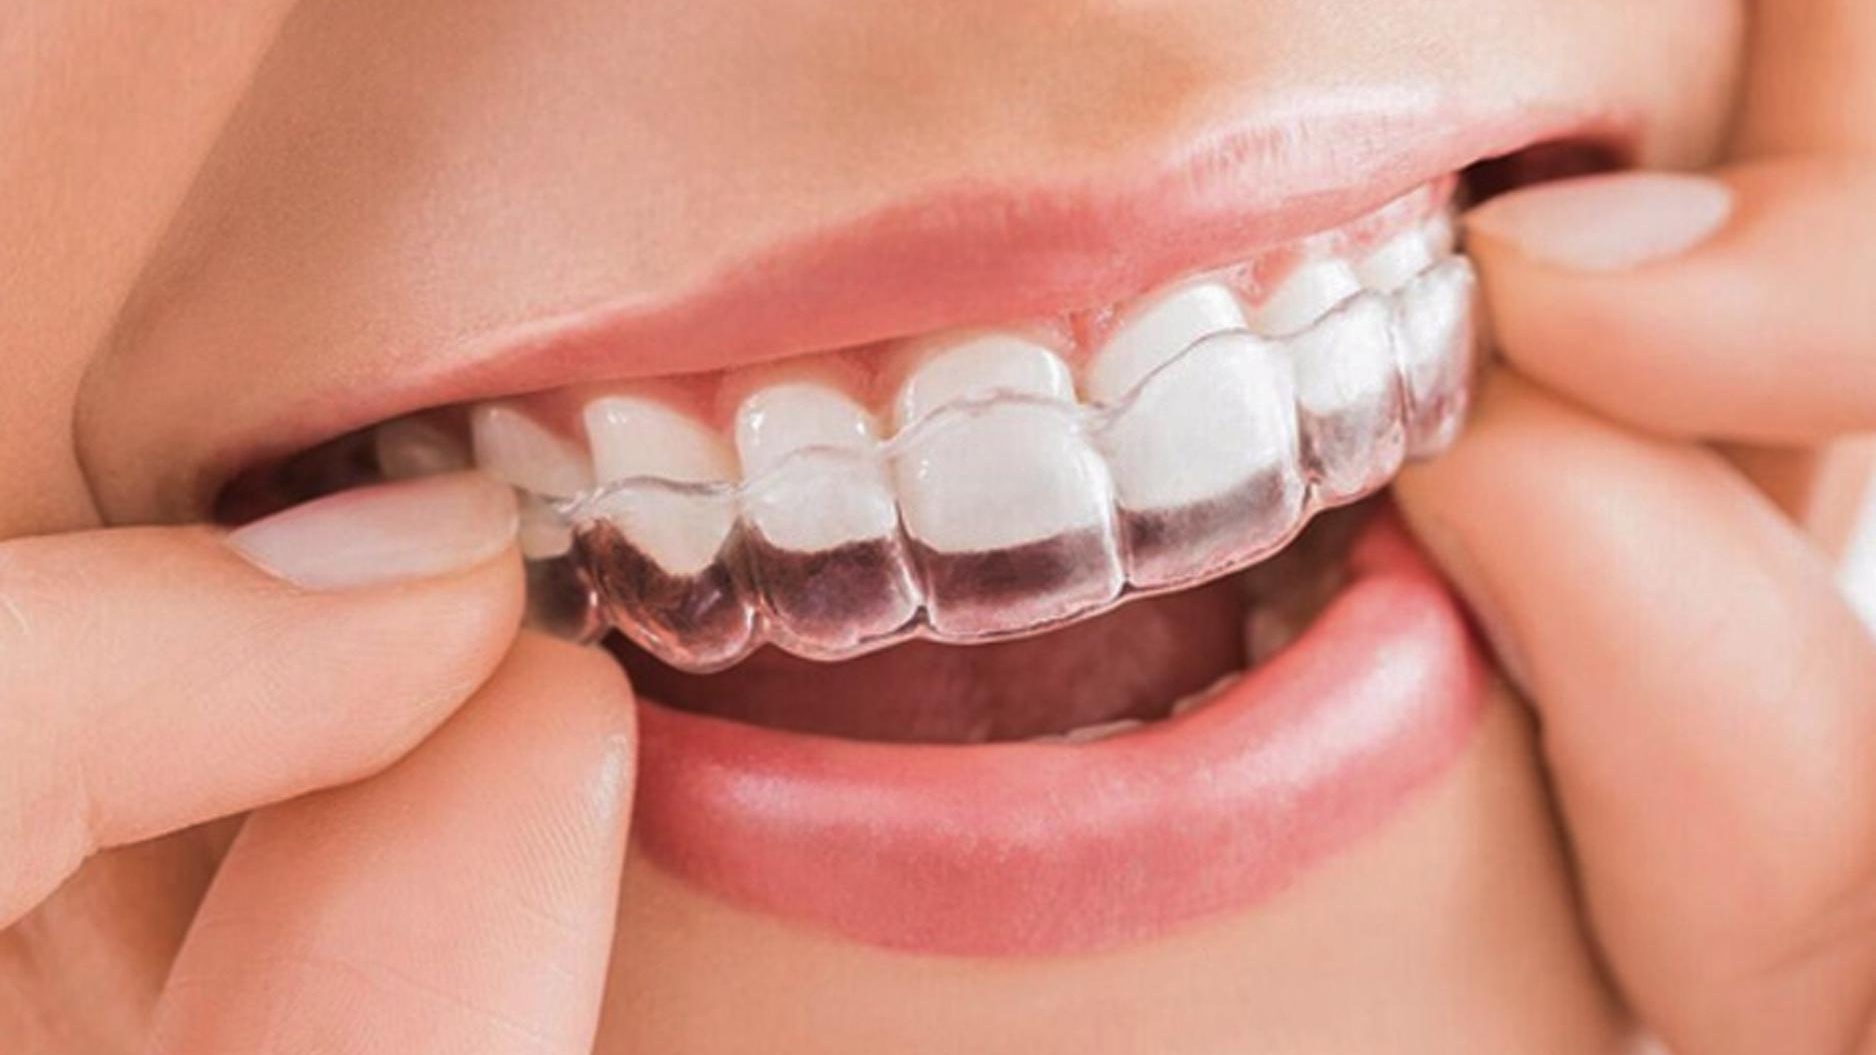 Có những phương pháp niềng răng phổ biến nào dành cho người 16 tuổi?
